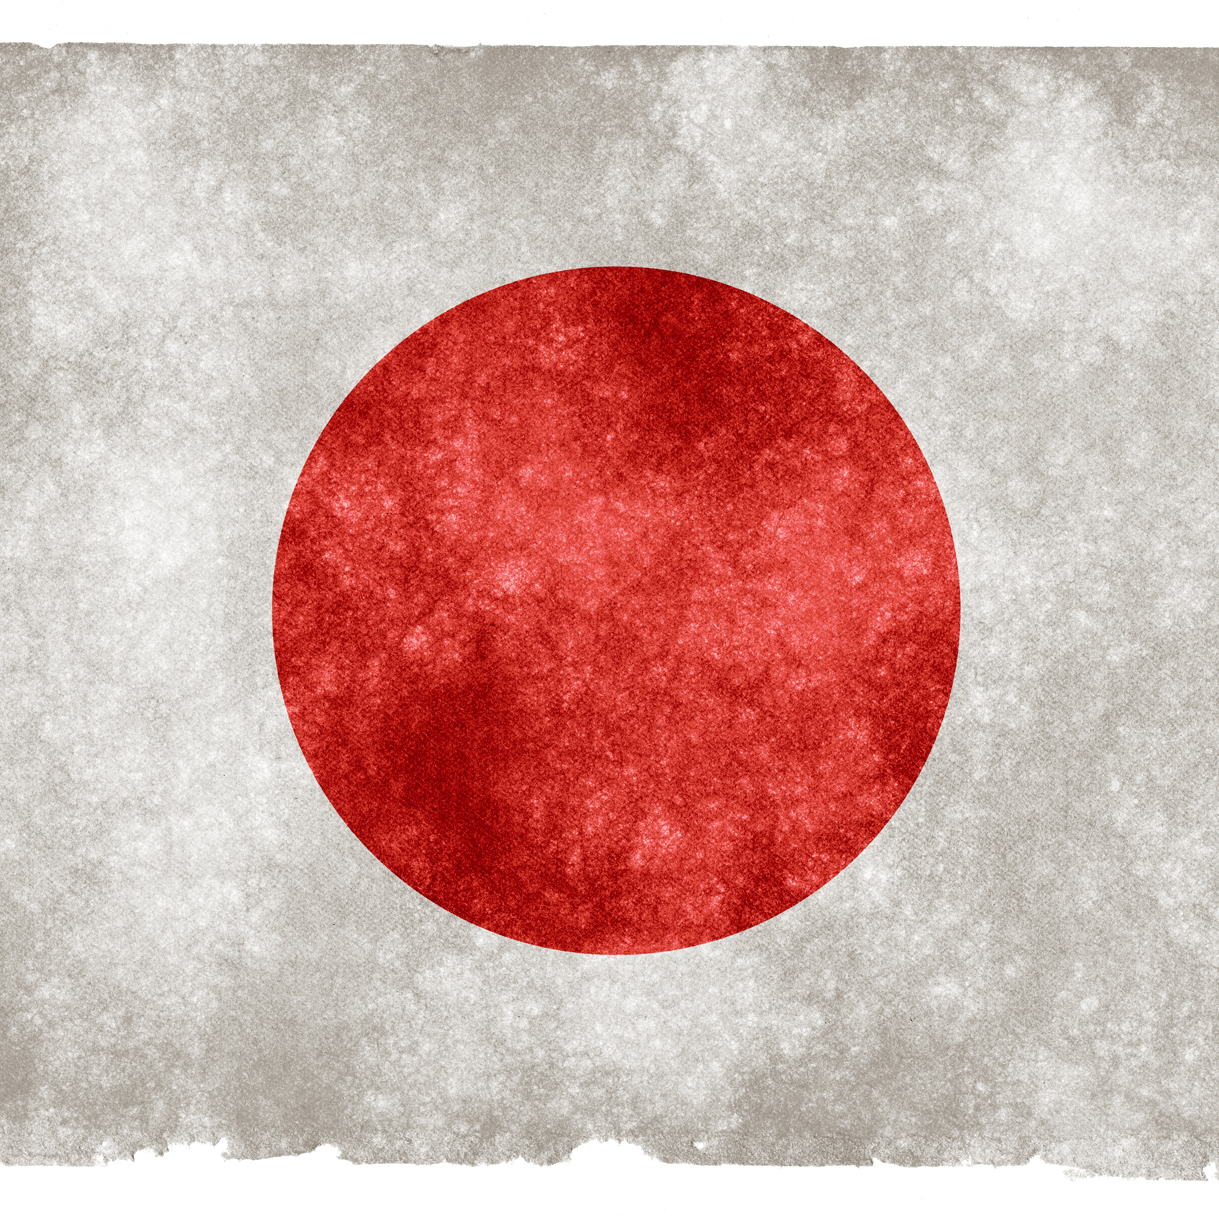 Le japon est-il un pays d’immigration ?